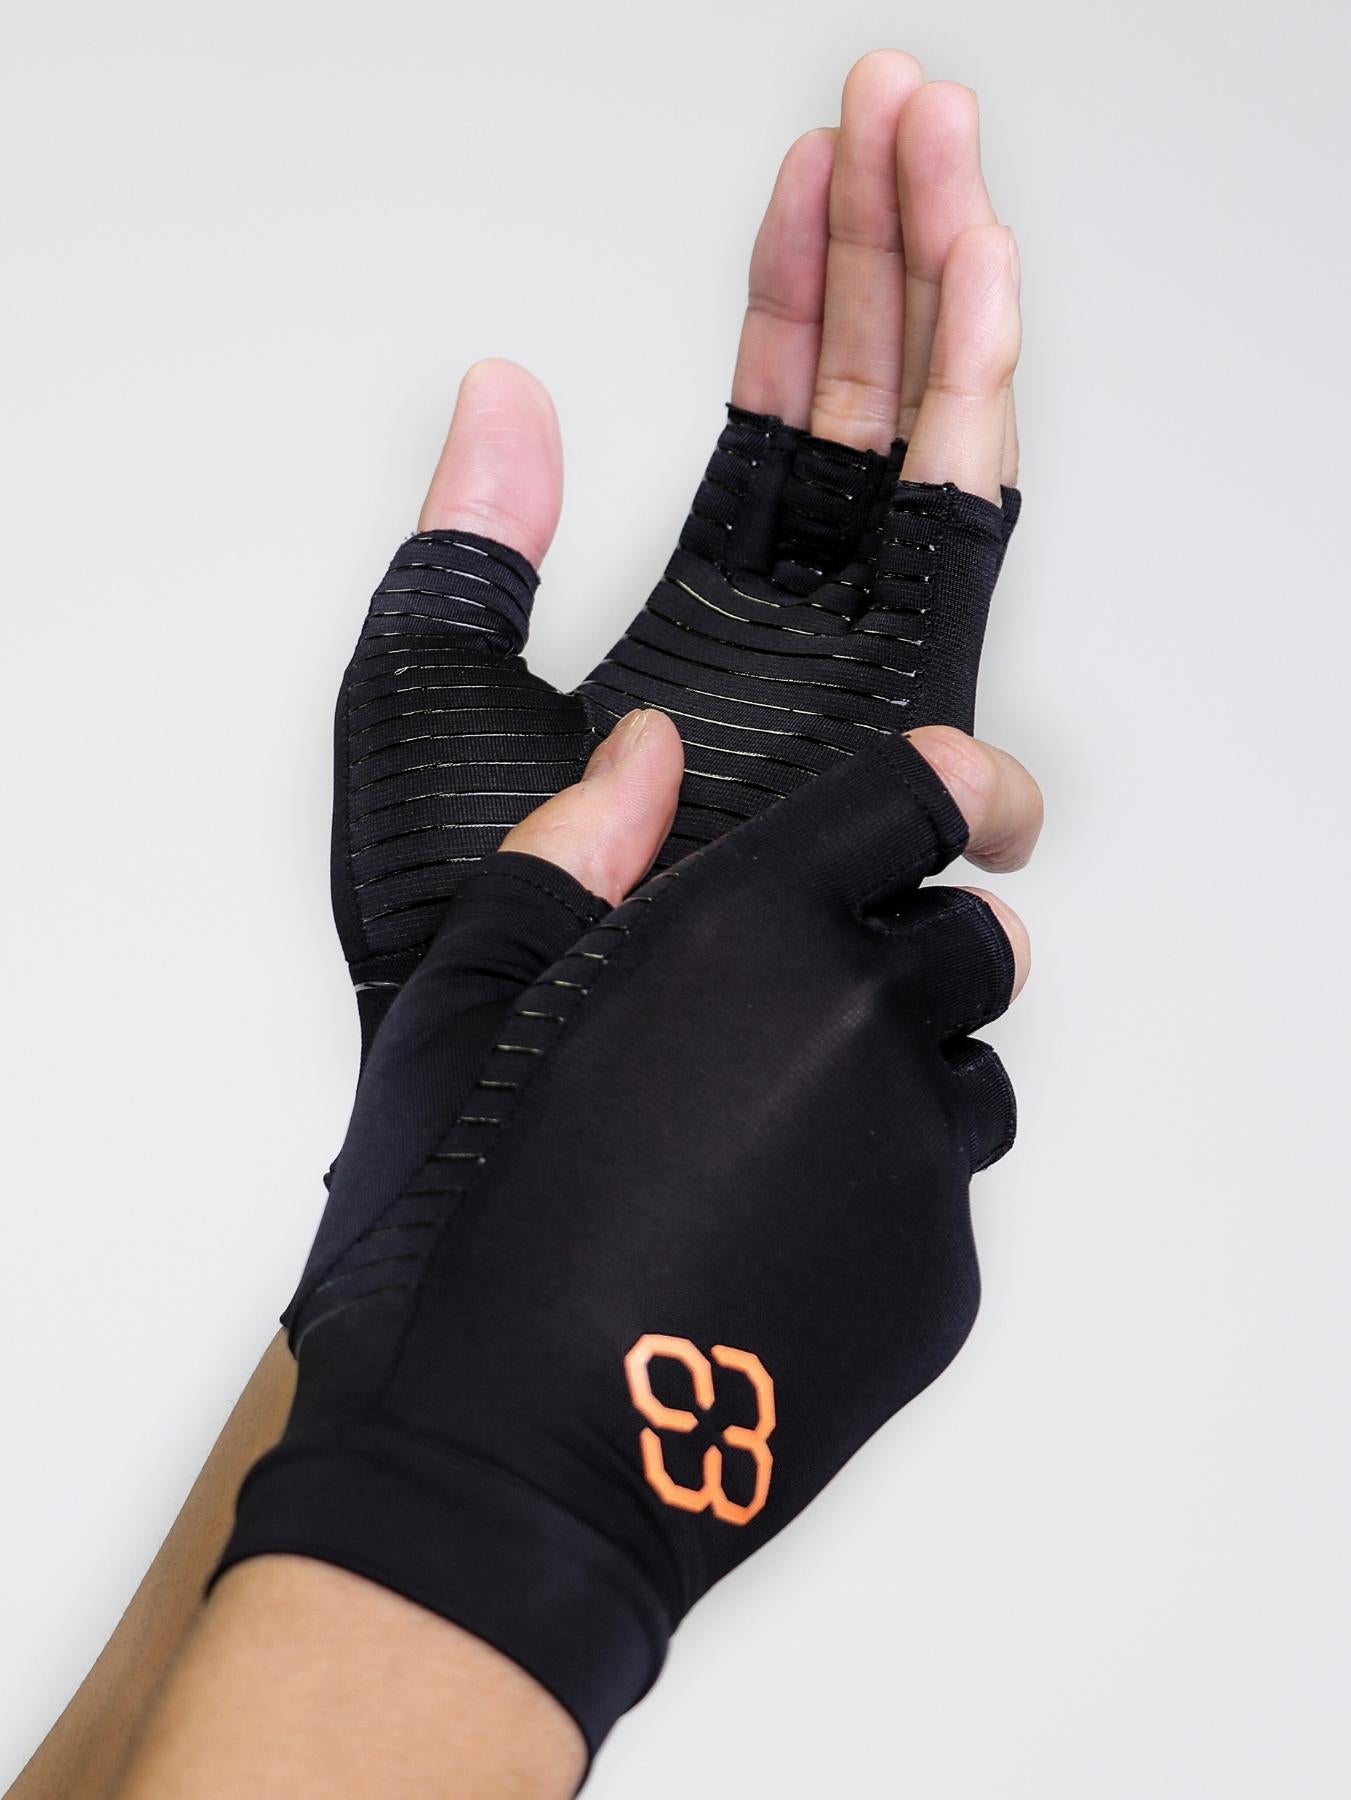 Copper Compression Half Gloves - Unisex – Copper 88